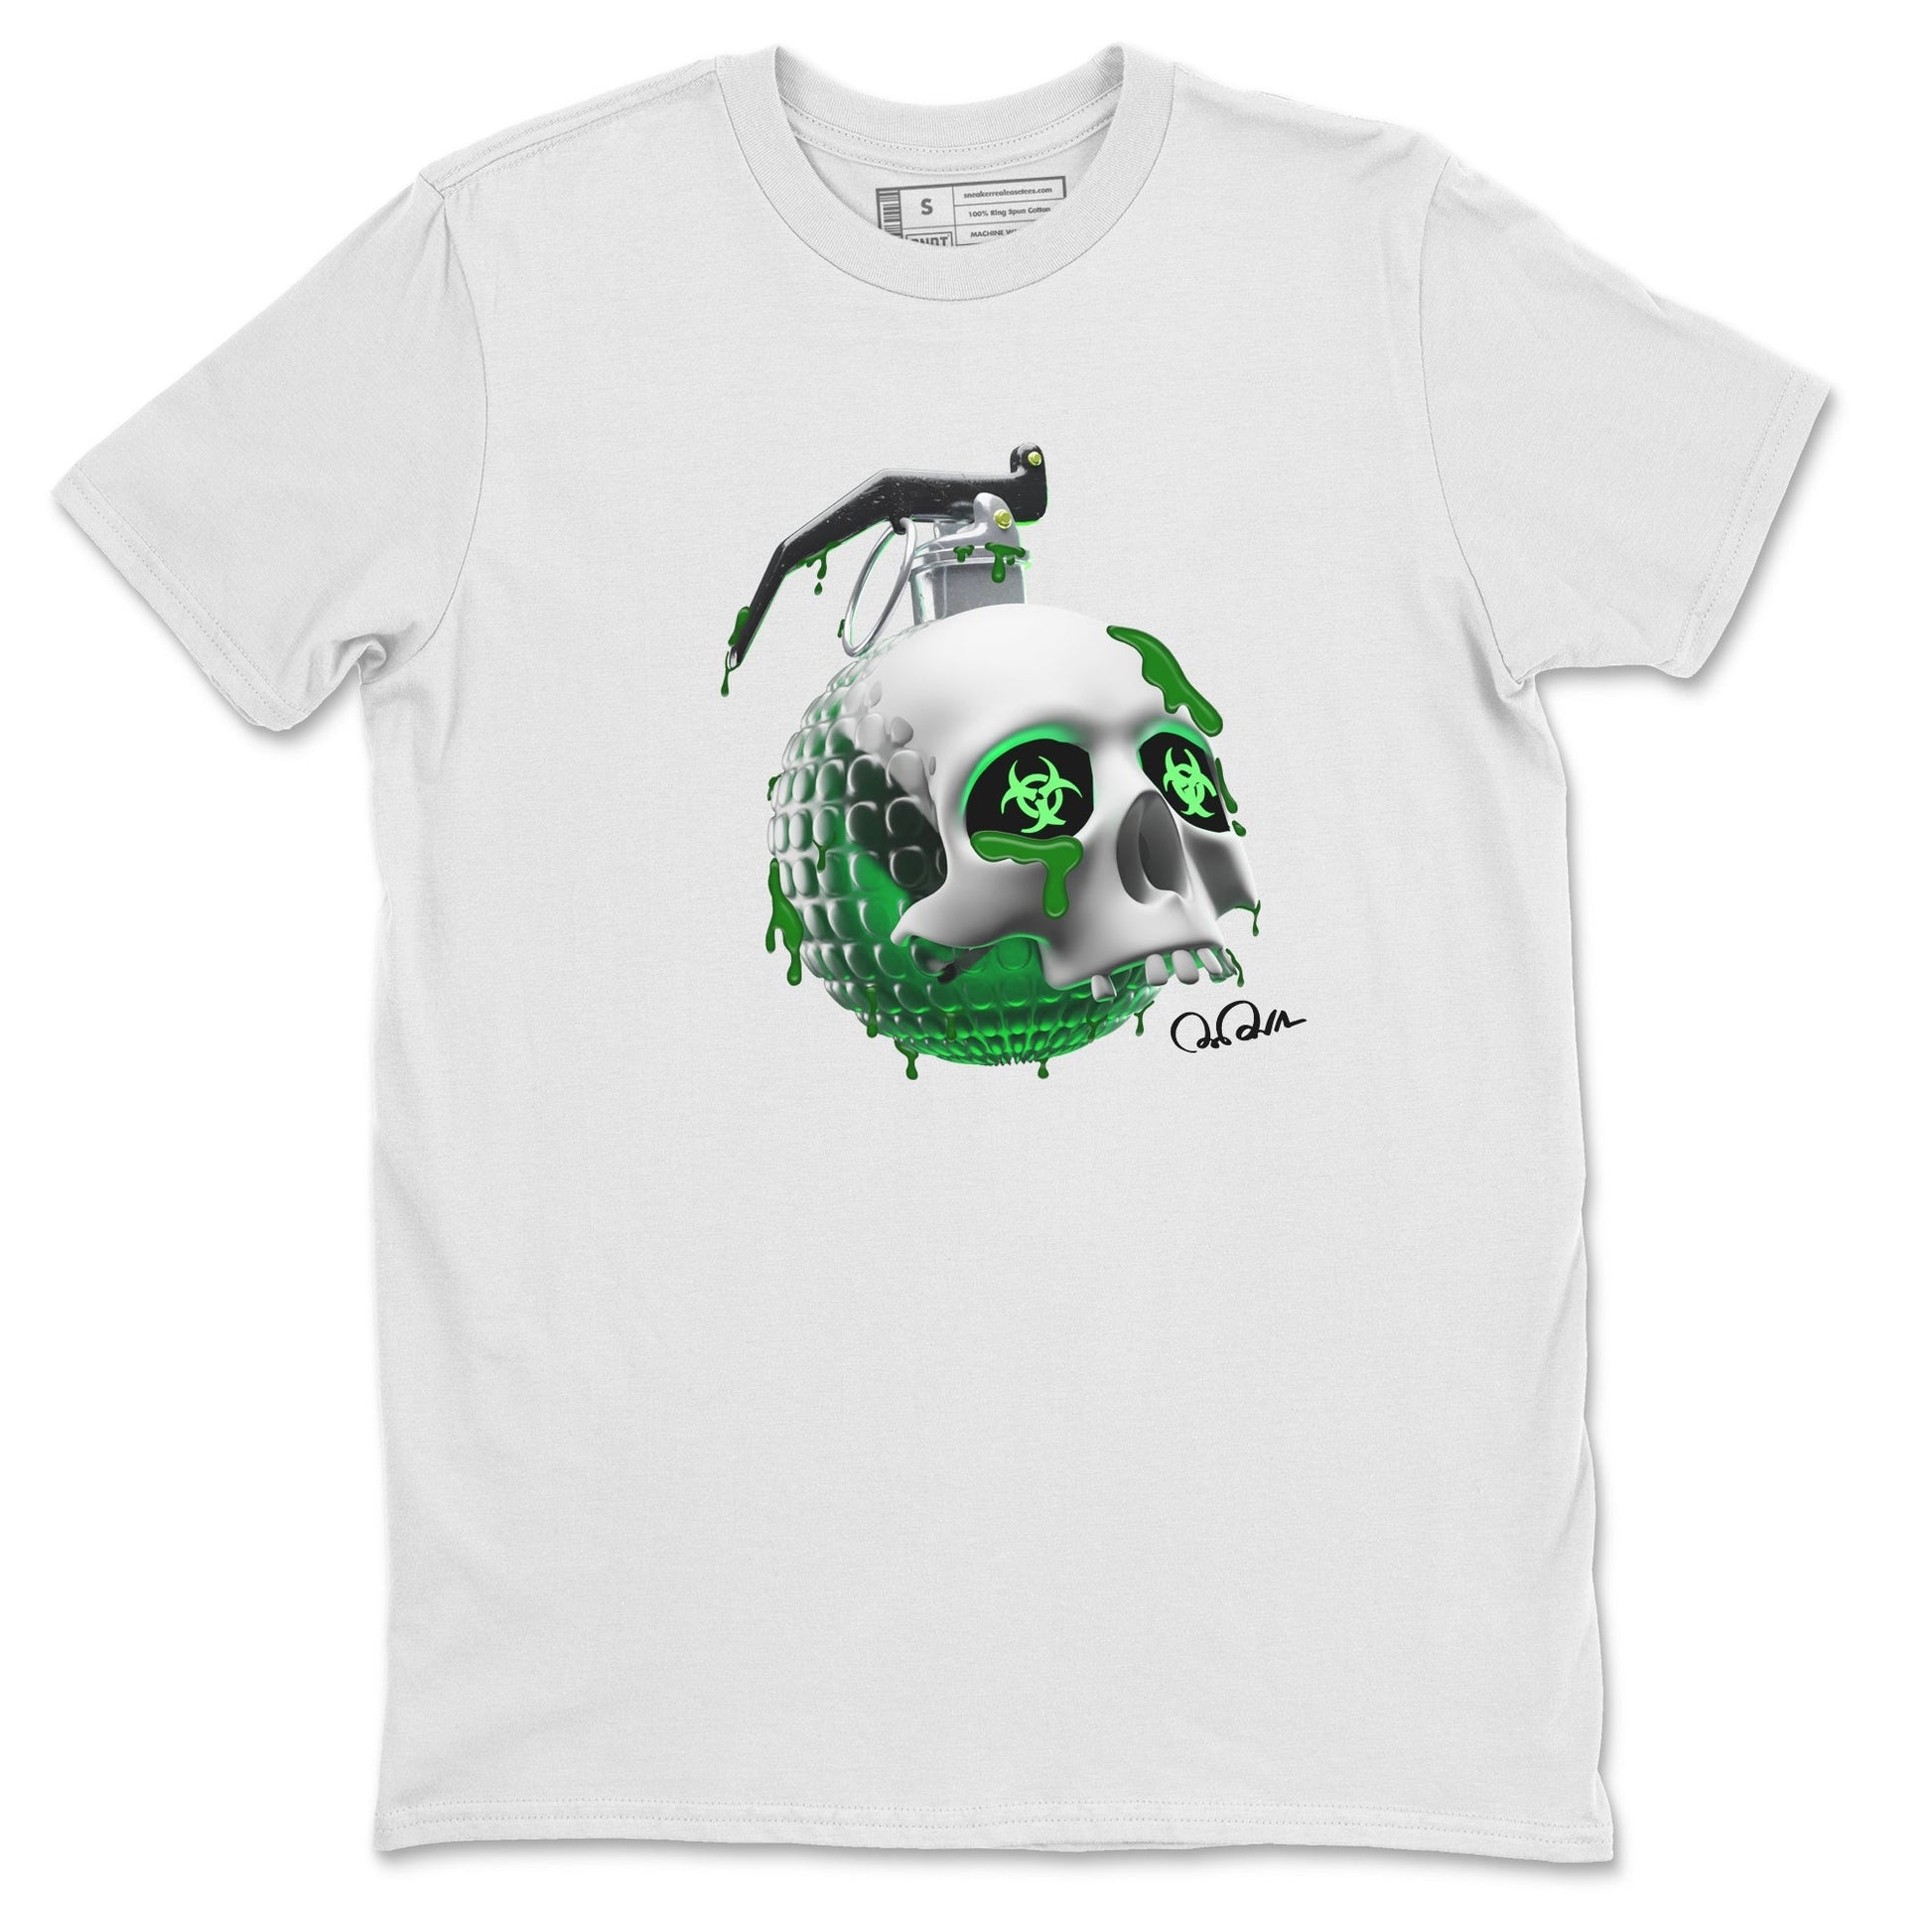 Air Jordan 4 Pine Green Sneaker Tees Drip Gear Zone Skull Bomb Sneaker Tees AJ4 Pine Green Shirt Unisex Shirts White 2